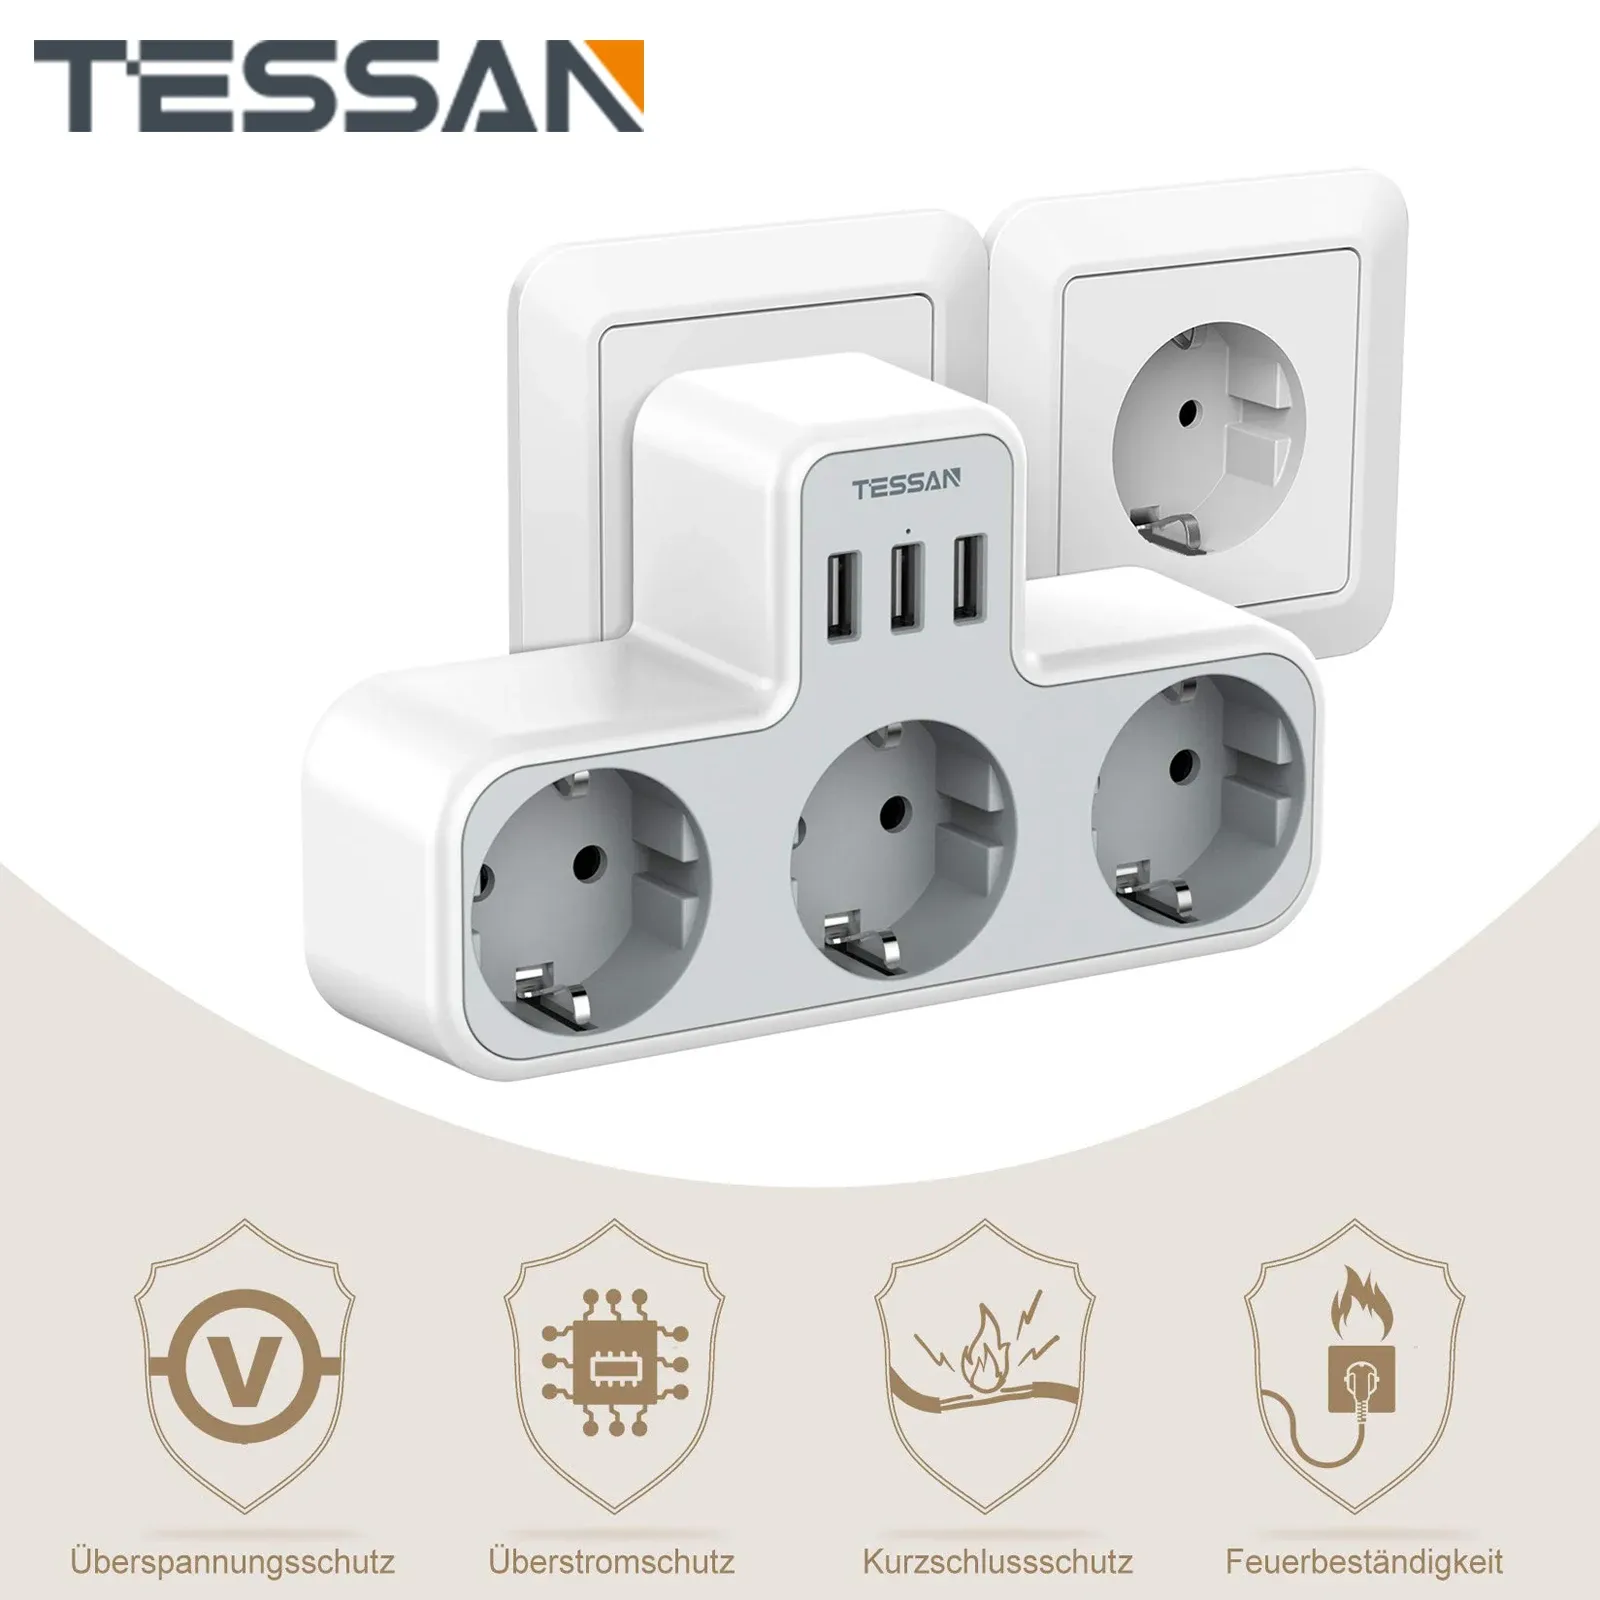 Adapters Tessan 3Way Socket med USB Surge Protection, 6in1 Socket Adapter med 3 USB -portar 5V/2.4A för smartphone, bärbar dator, kamera